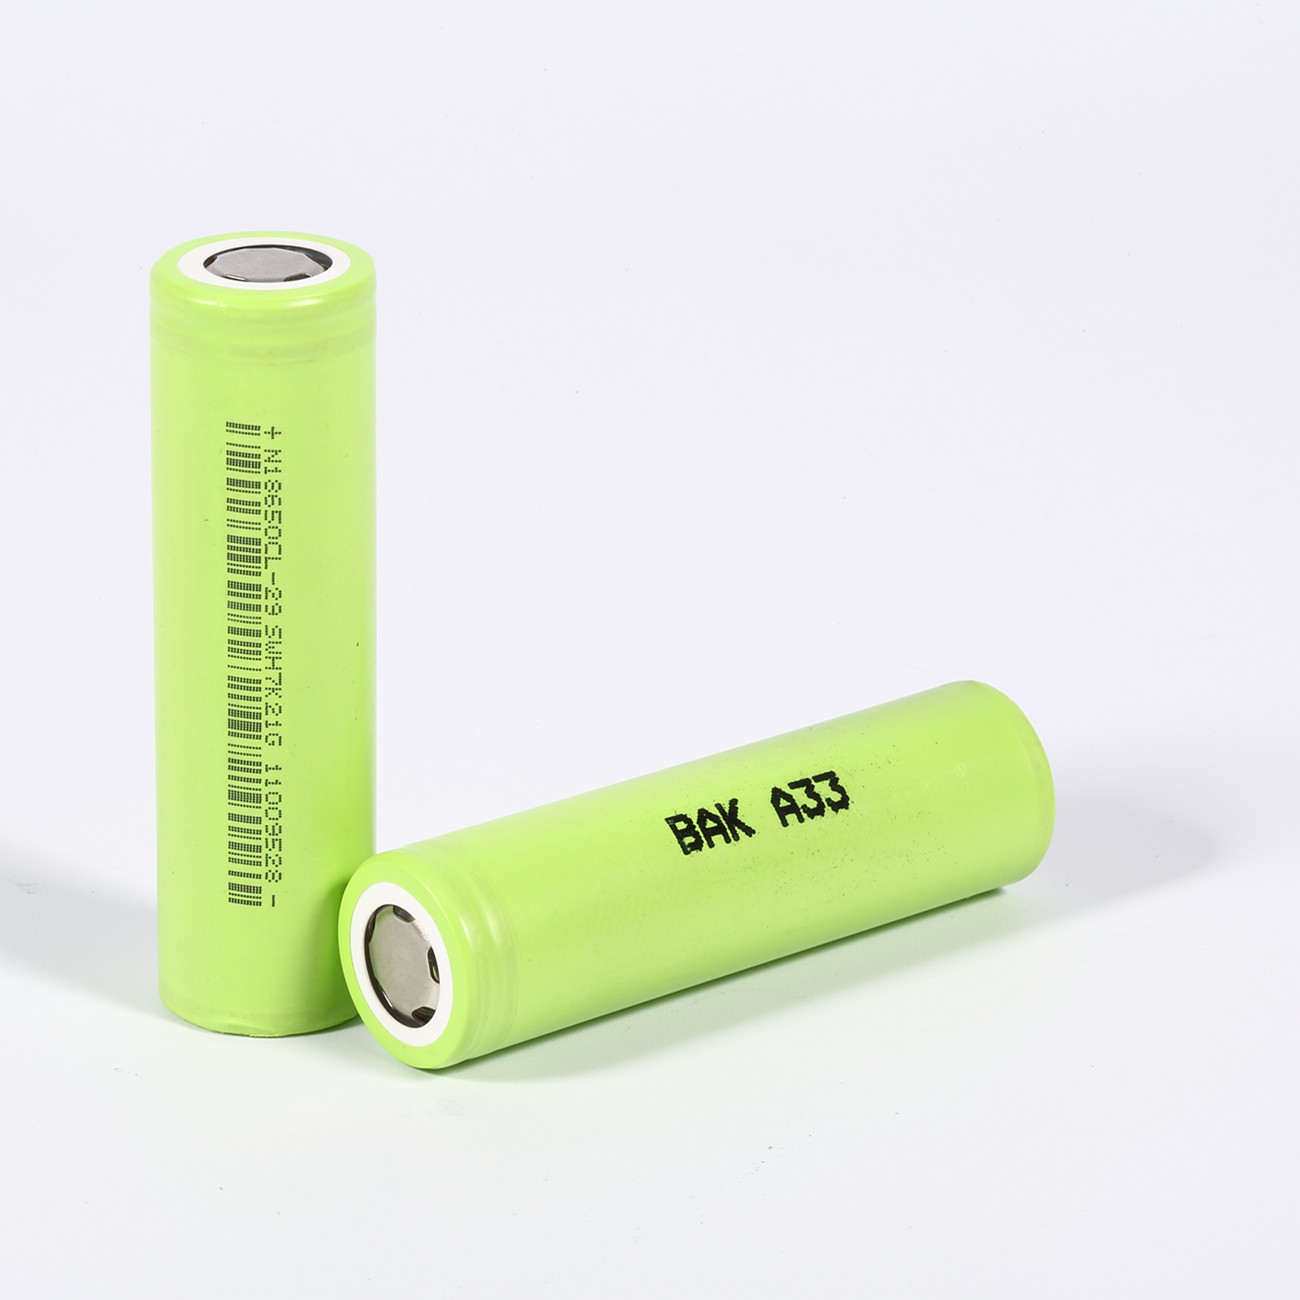 Baterias 18650 verdes de 3,6 volts no frete do porto